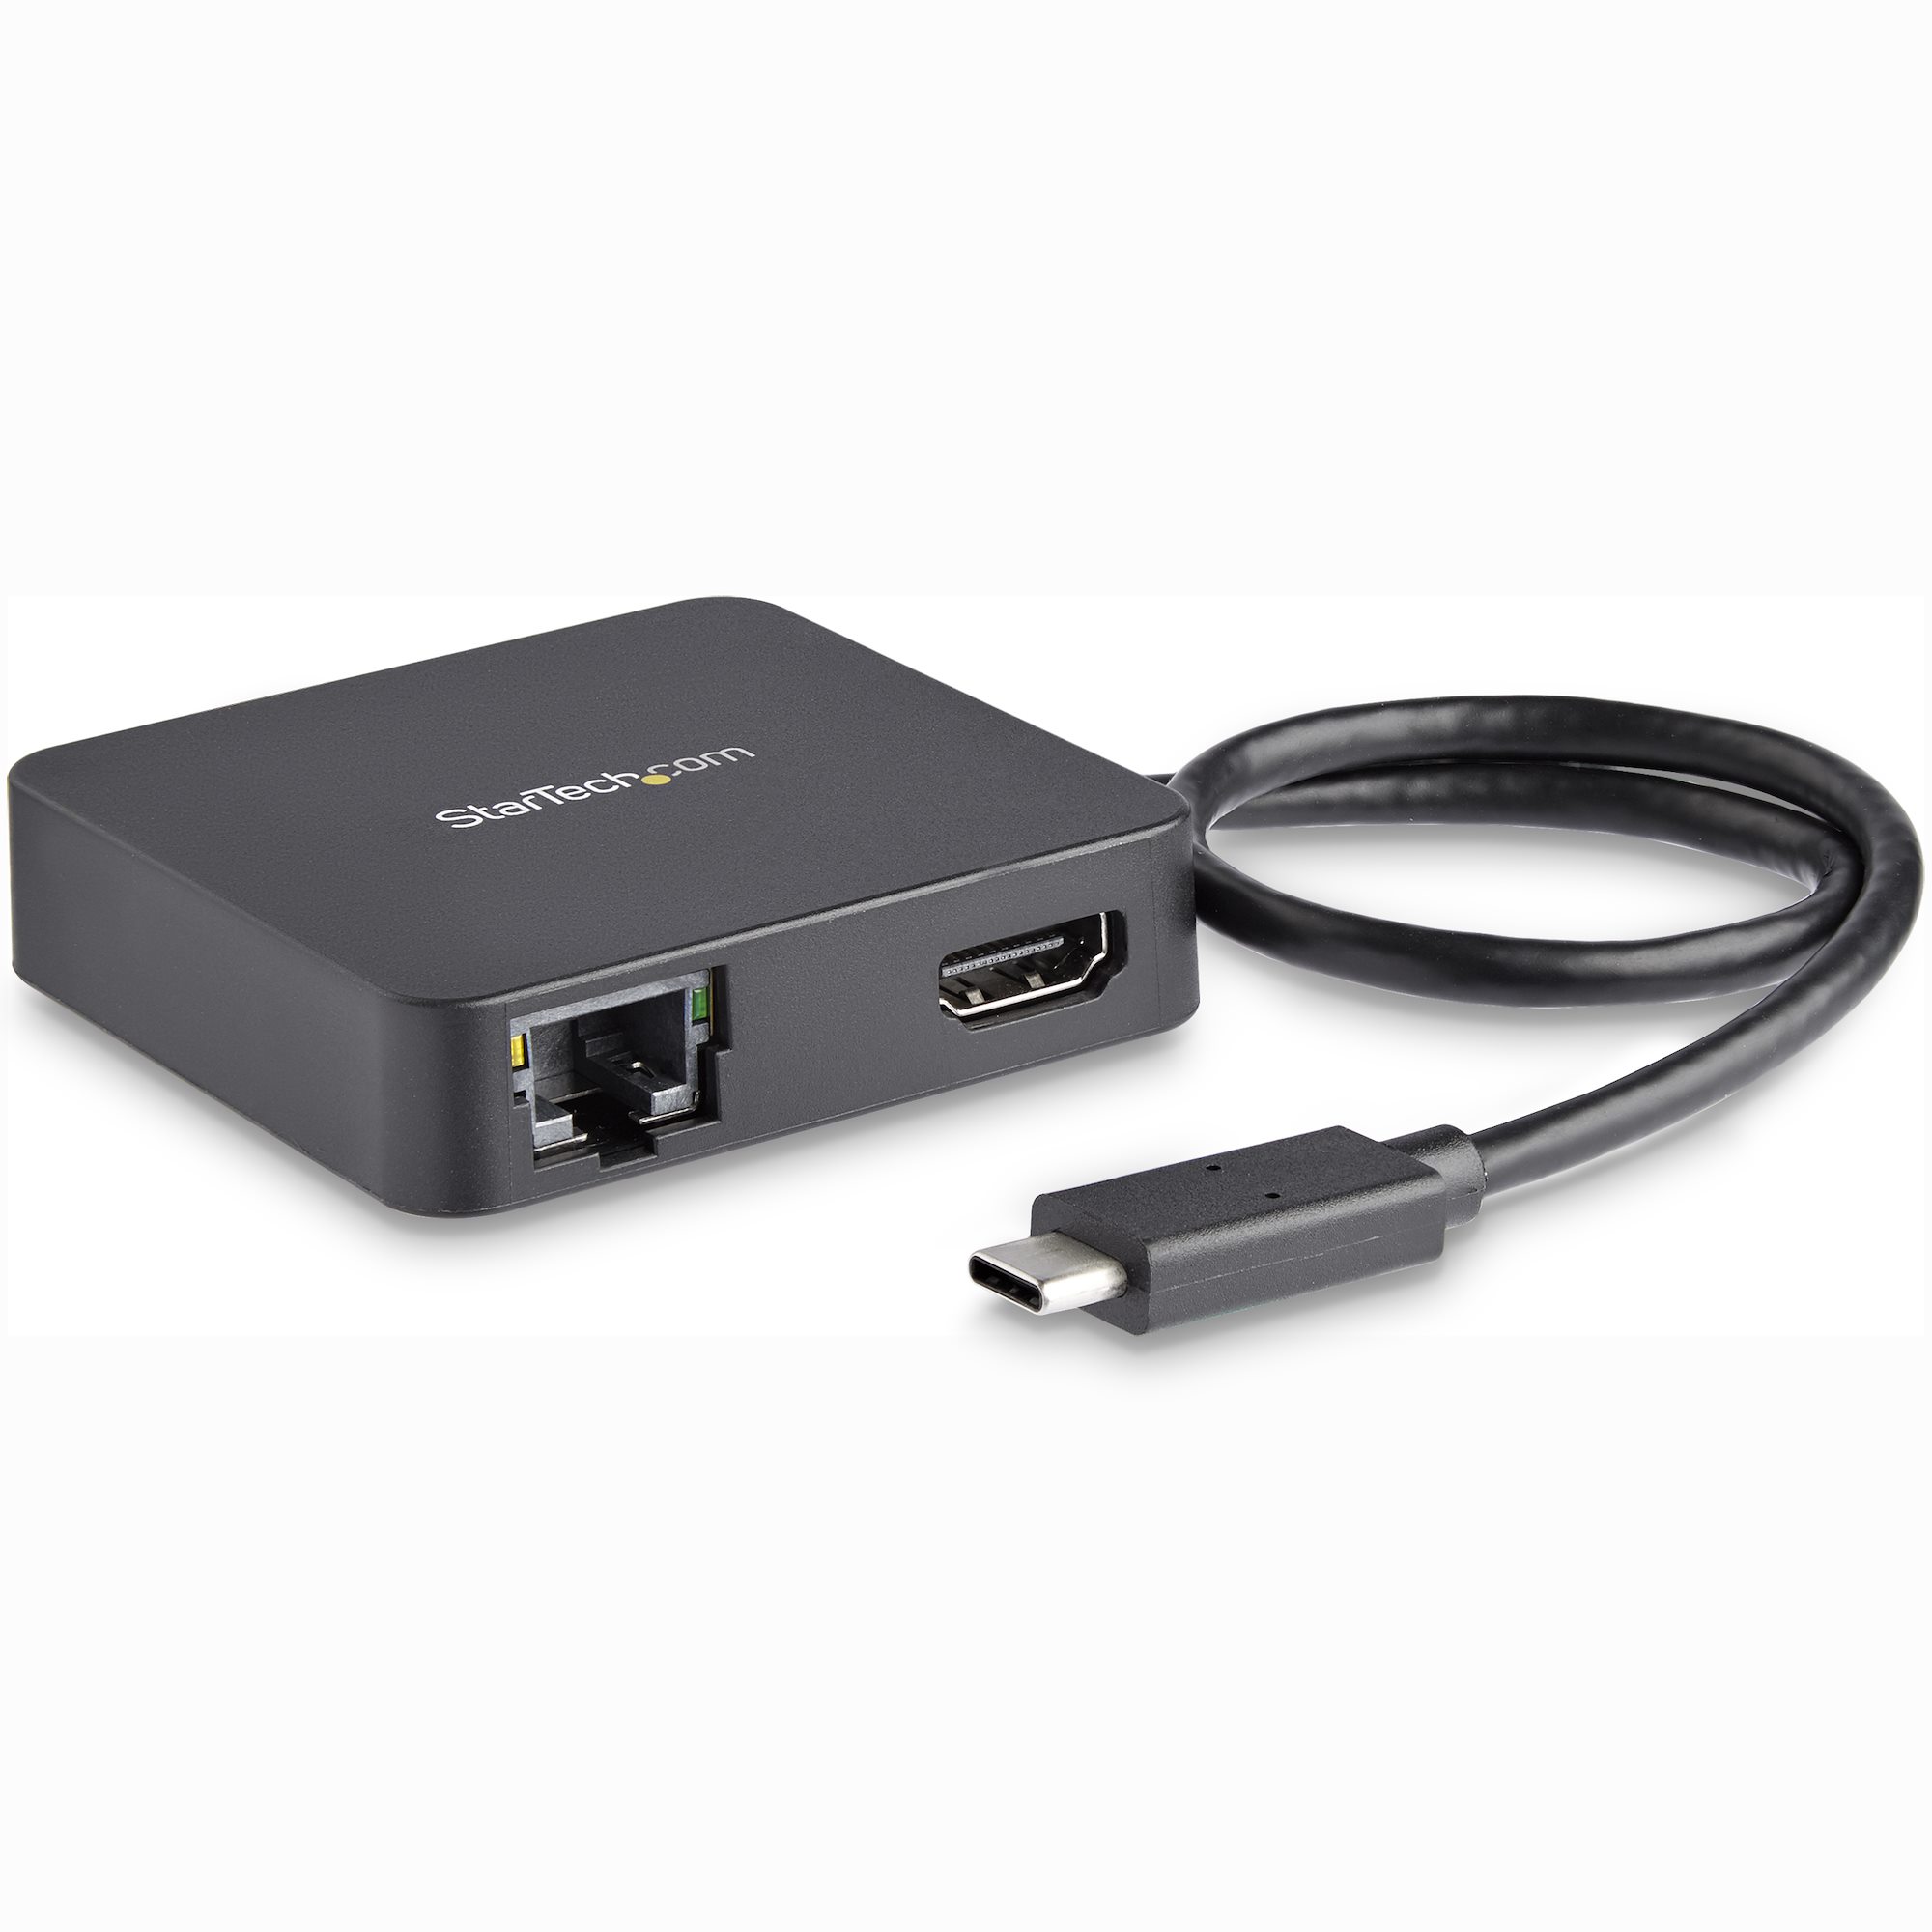 Optage Eve overskridelsen USB C Multiport Adapter 4K HDMI/GbE/USB - USB-C Multiport Adapters |  StarTech.com